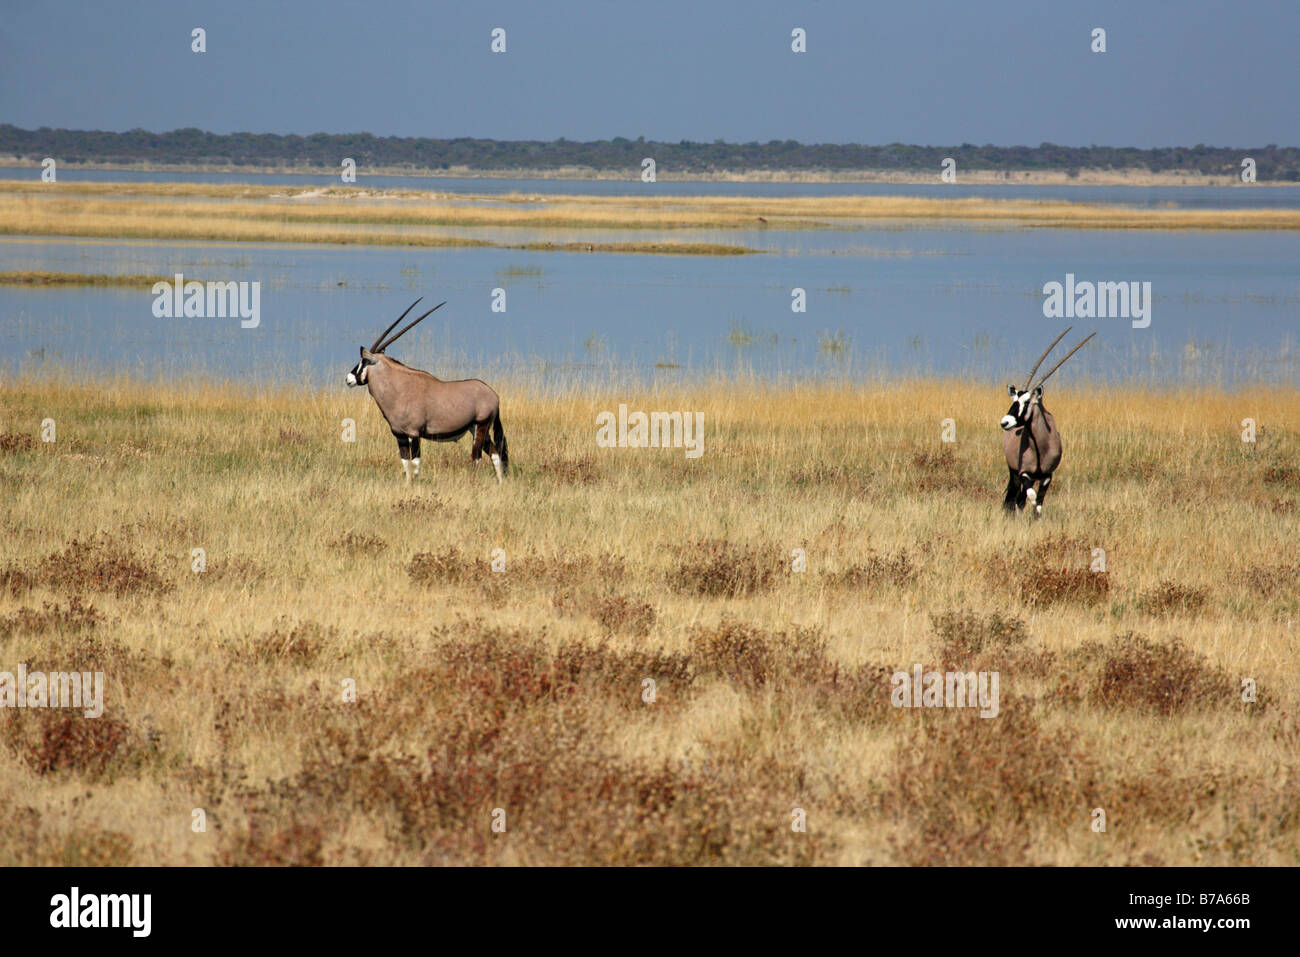 Une vue panoramique de deux (Oryx gemsbok) sur les bords de la cuvette d'Etosha rempli d'eau Banque D'Images